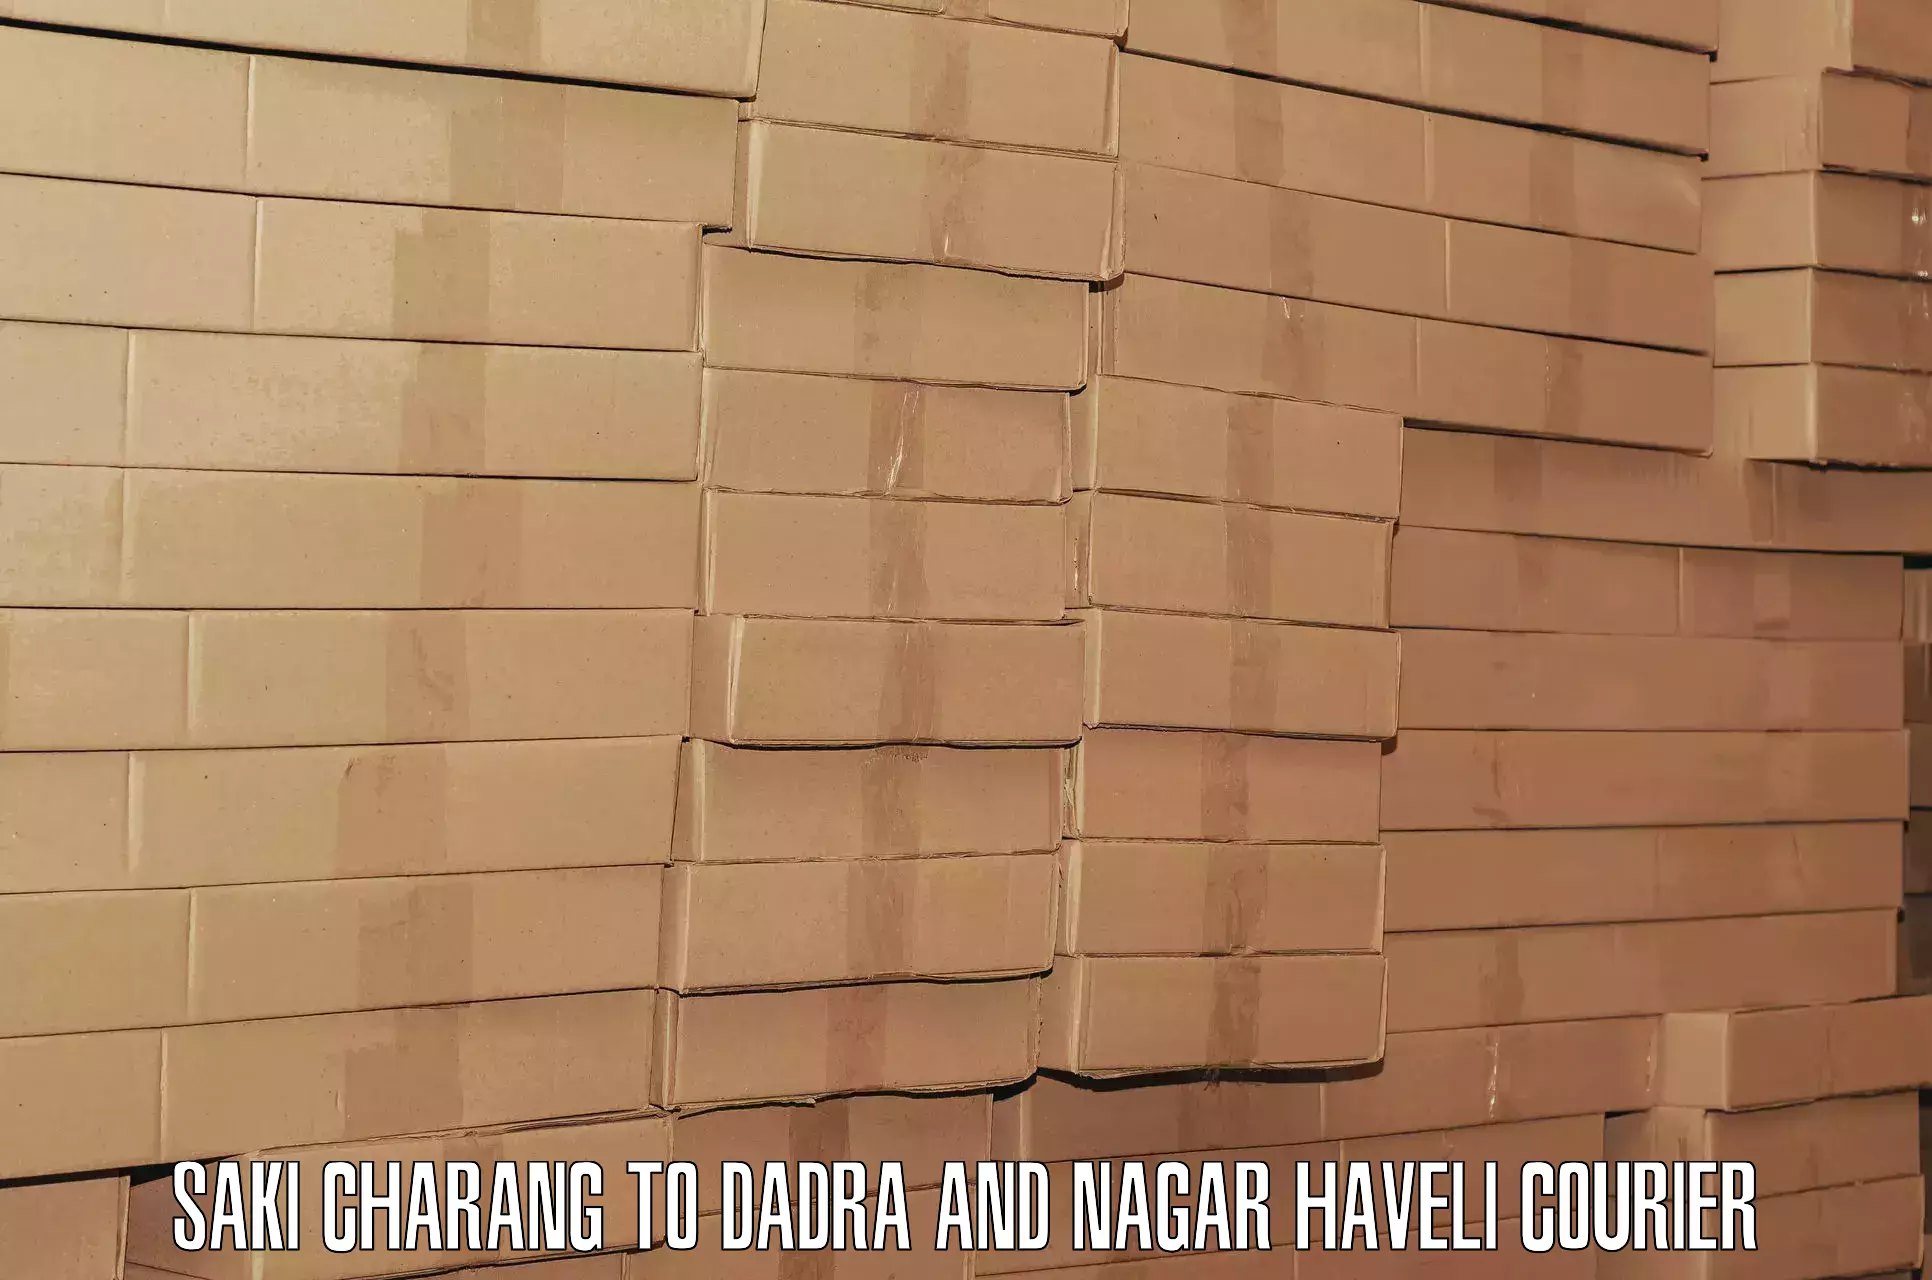 Digital baggage courier Saki Charang to Dadra and Nagar Haveli